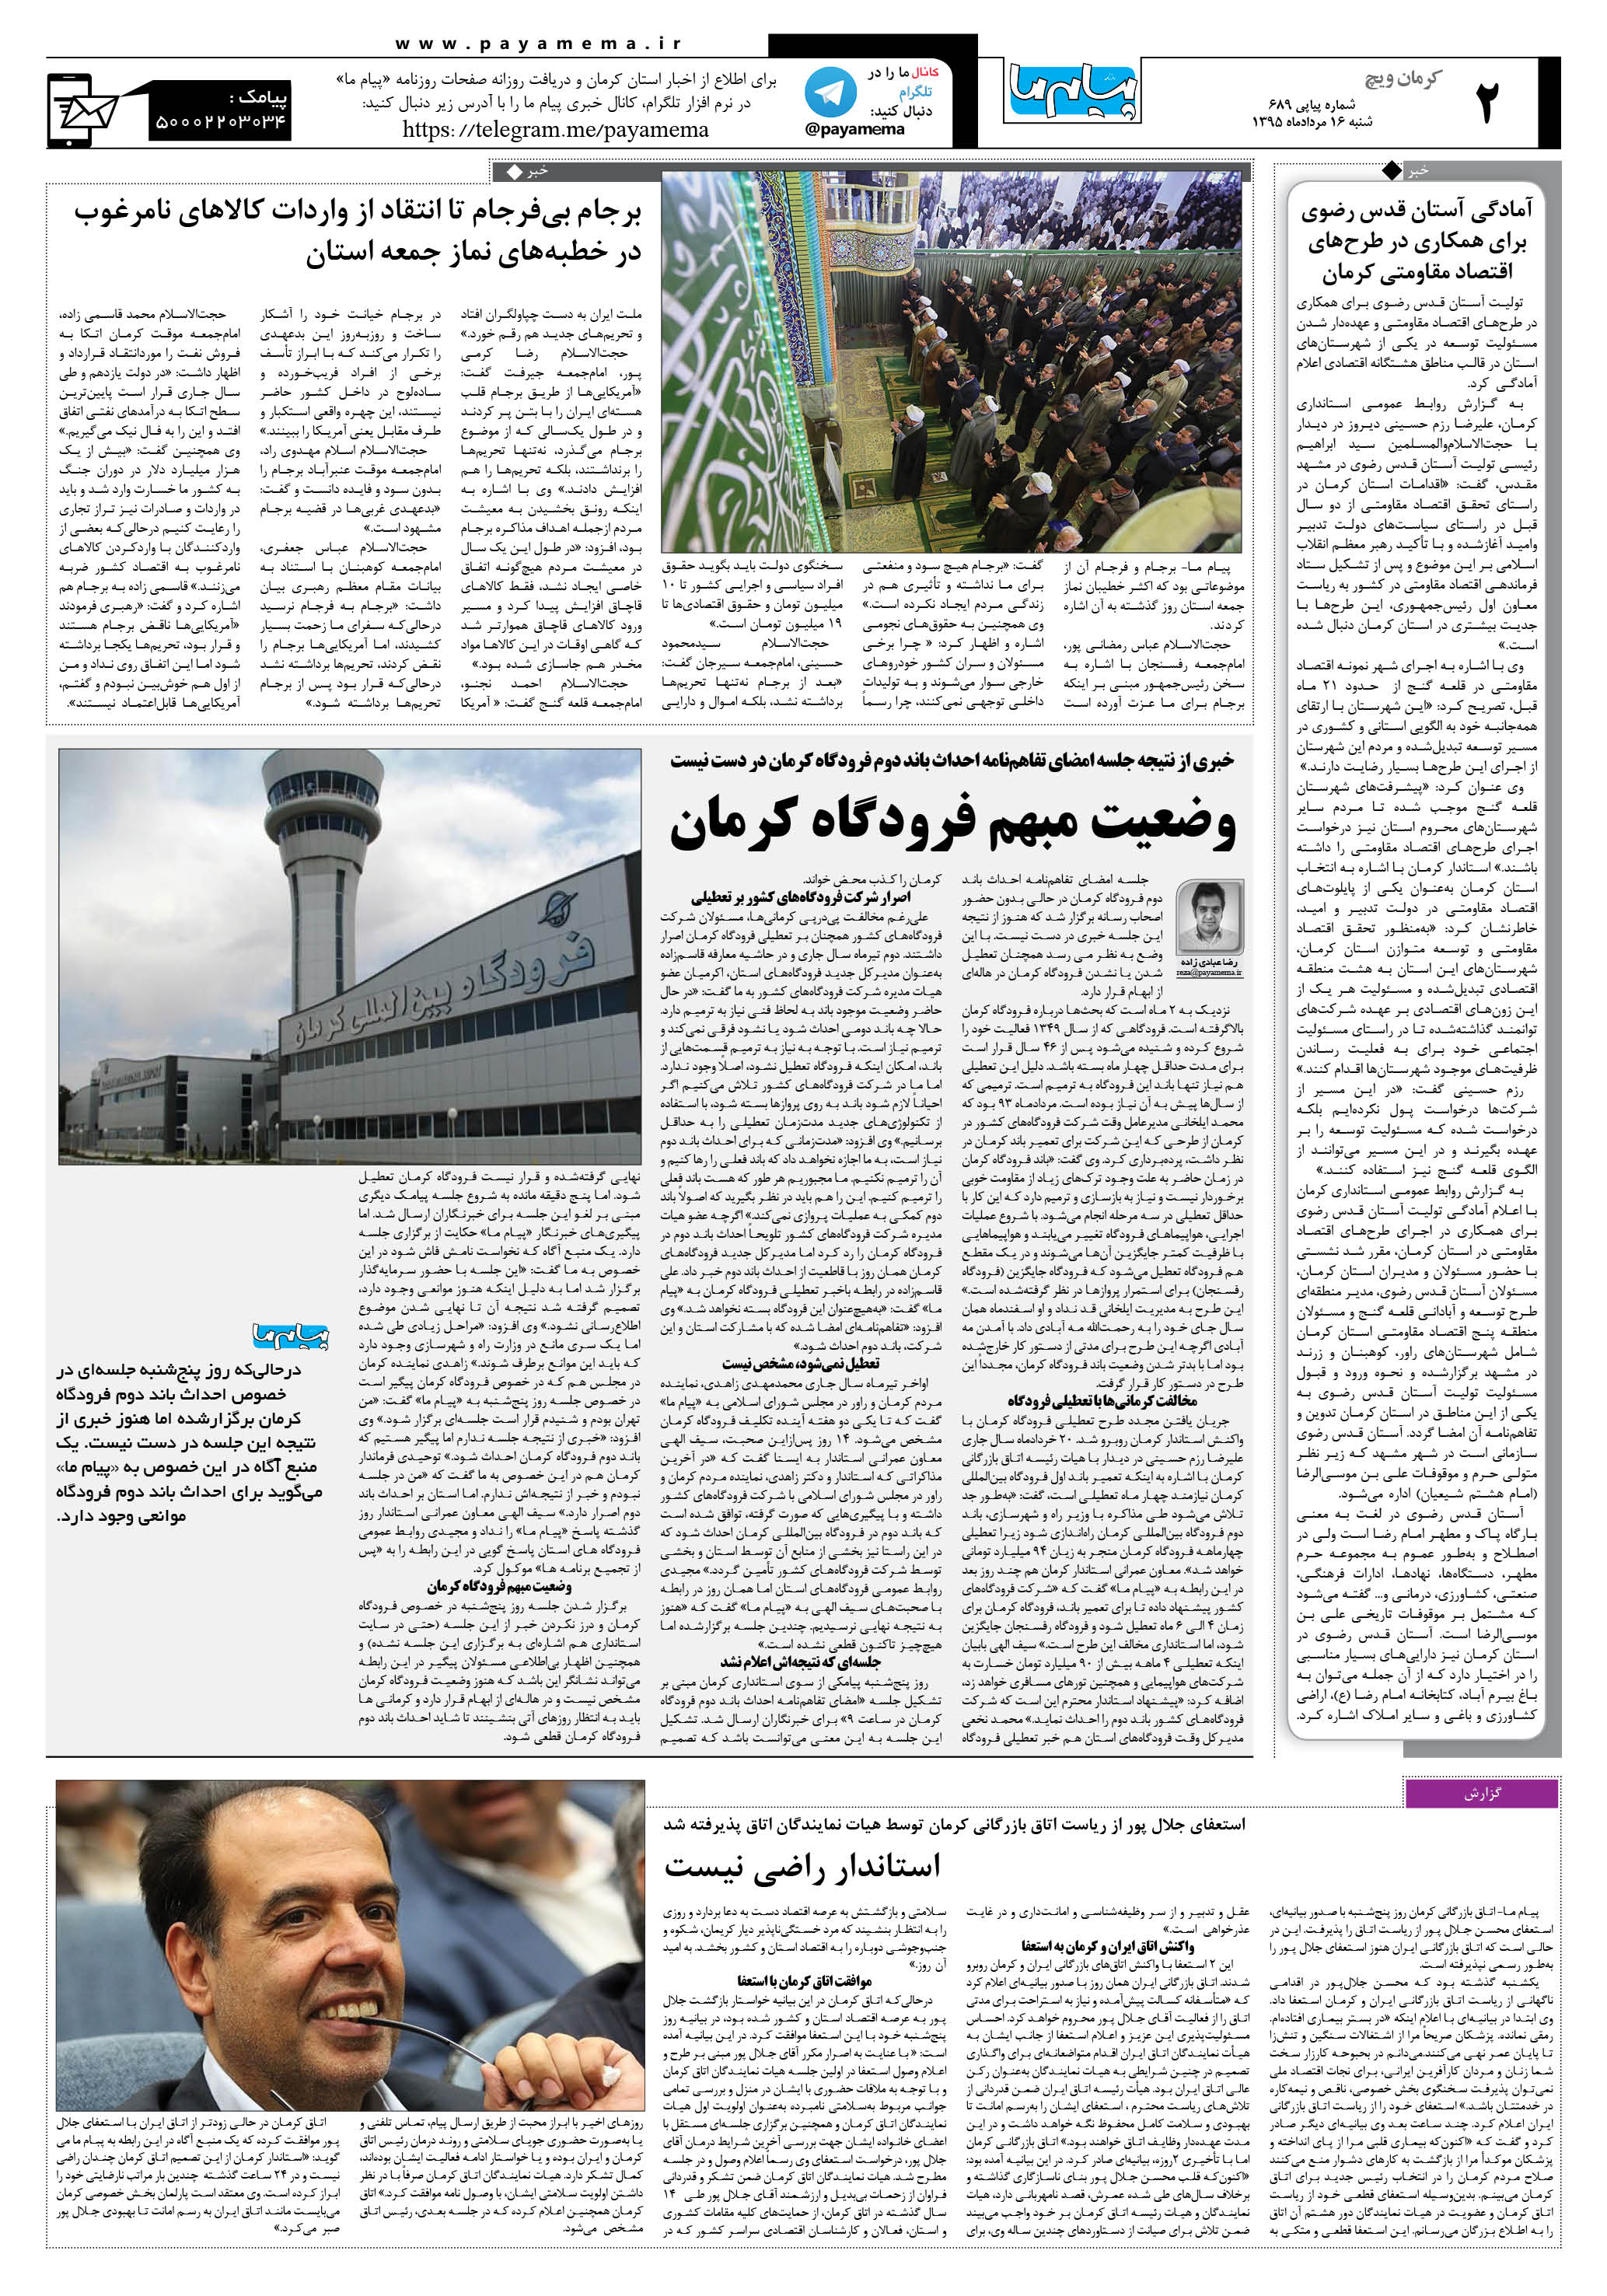 صفحه کرمان ویج شماره 689 روزنامه پیام ما